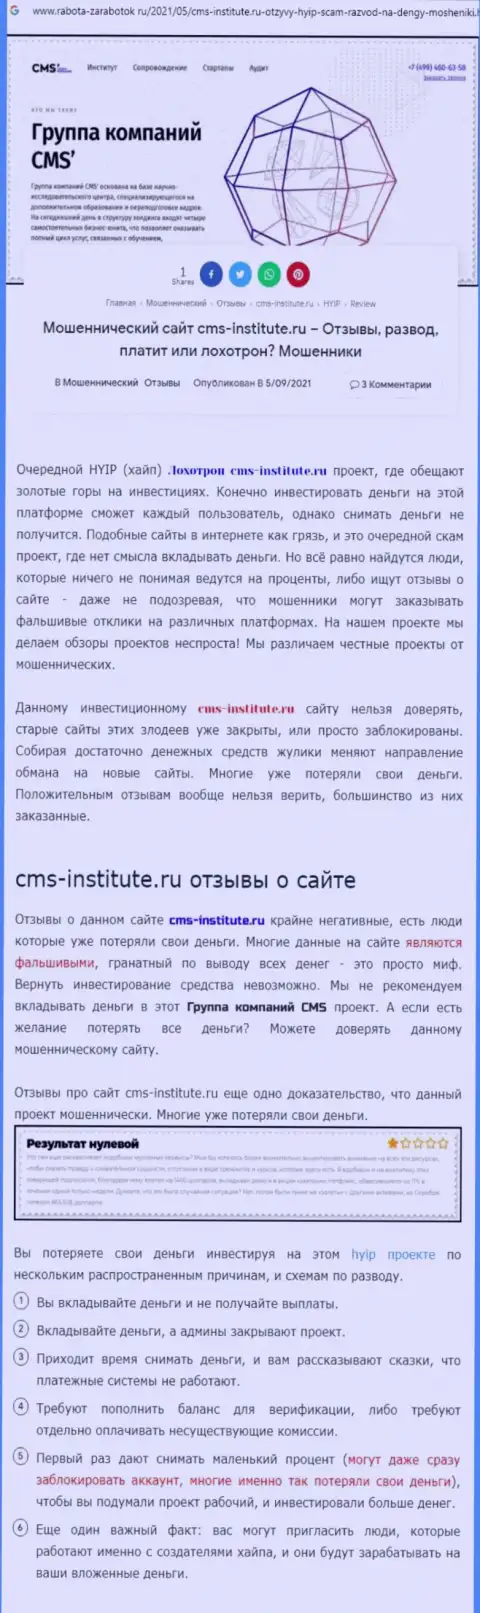 CMS-Institute Ru - это наглый грабеж клиентов (статья с обзором мошеннических деяний)